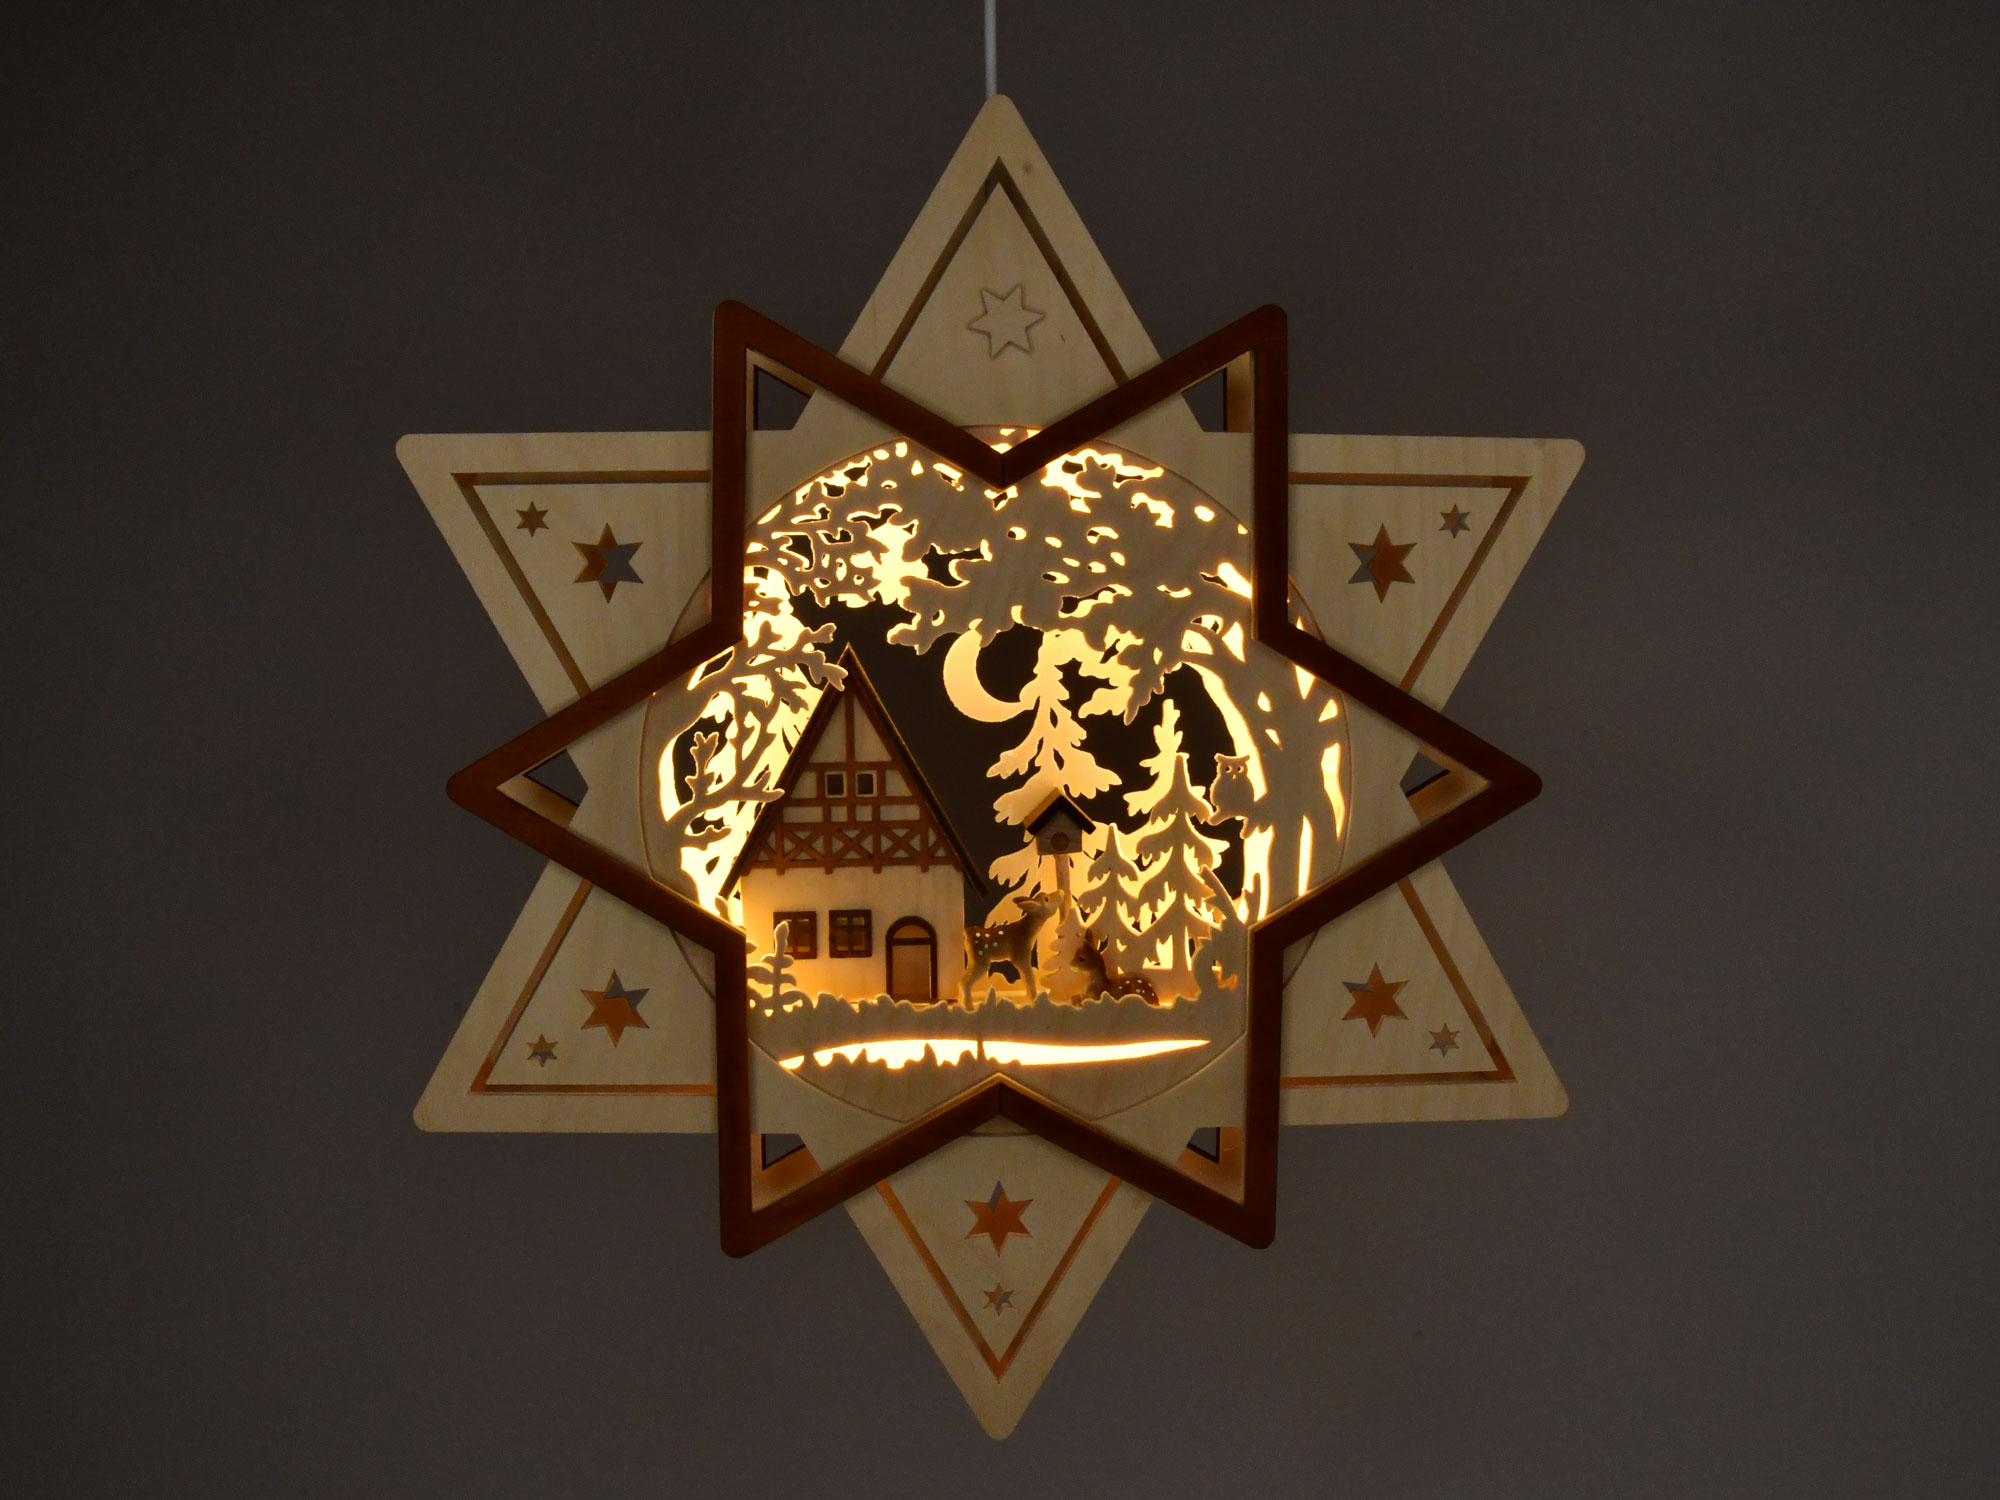 Fensterbild, beleuchtet, Stern mit Haus, Wald und Rehen, Beleuchtung LED-Stripe